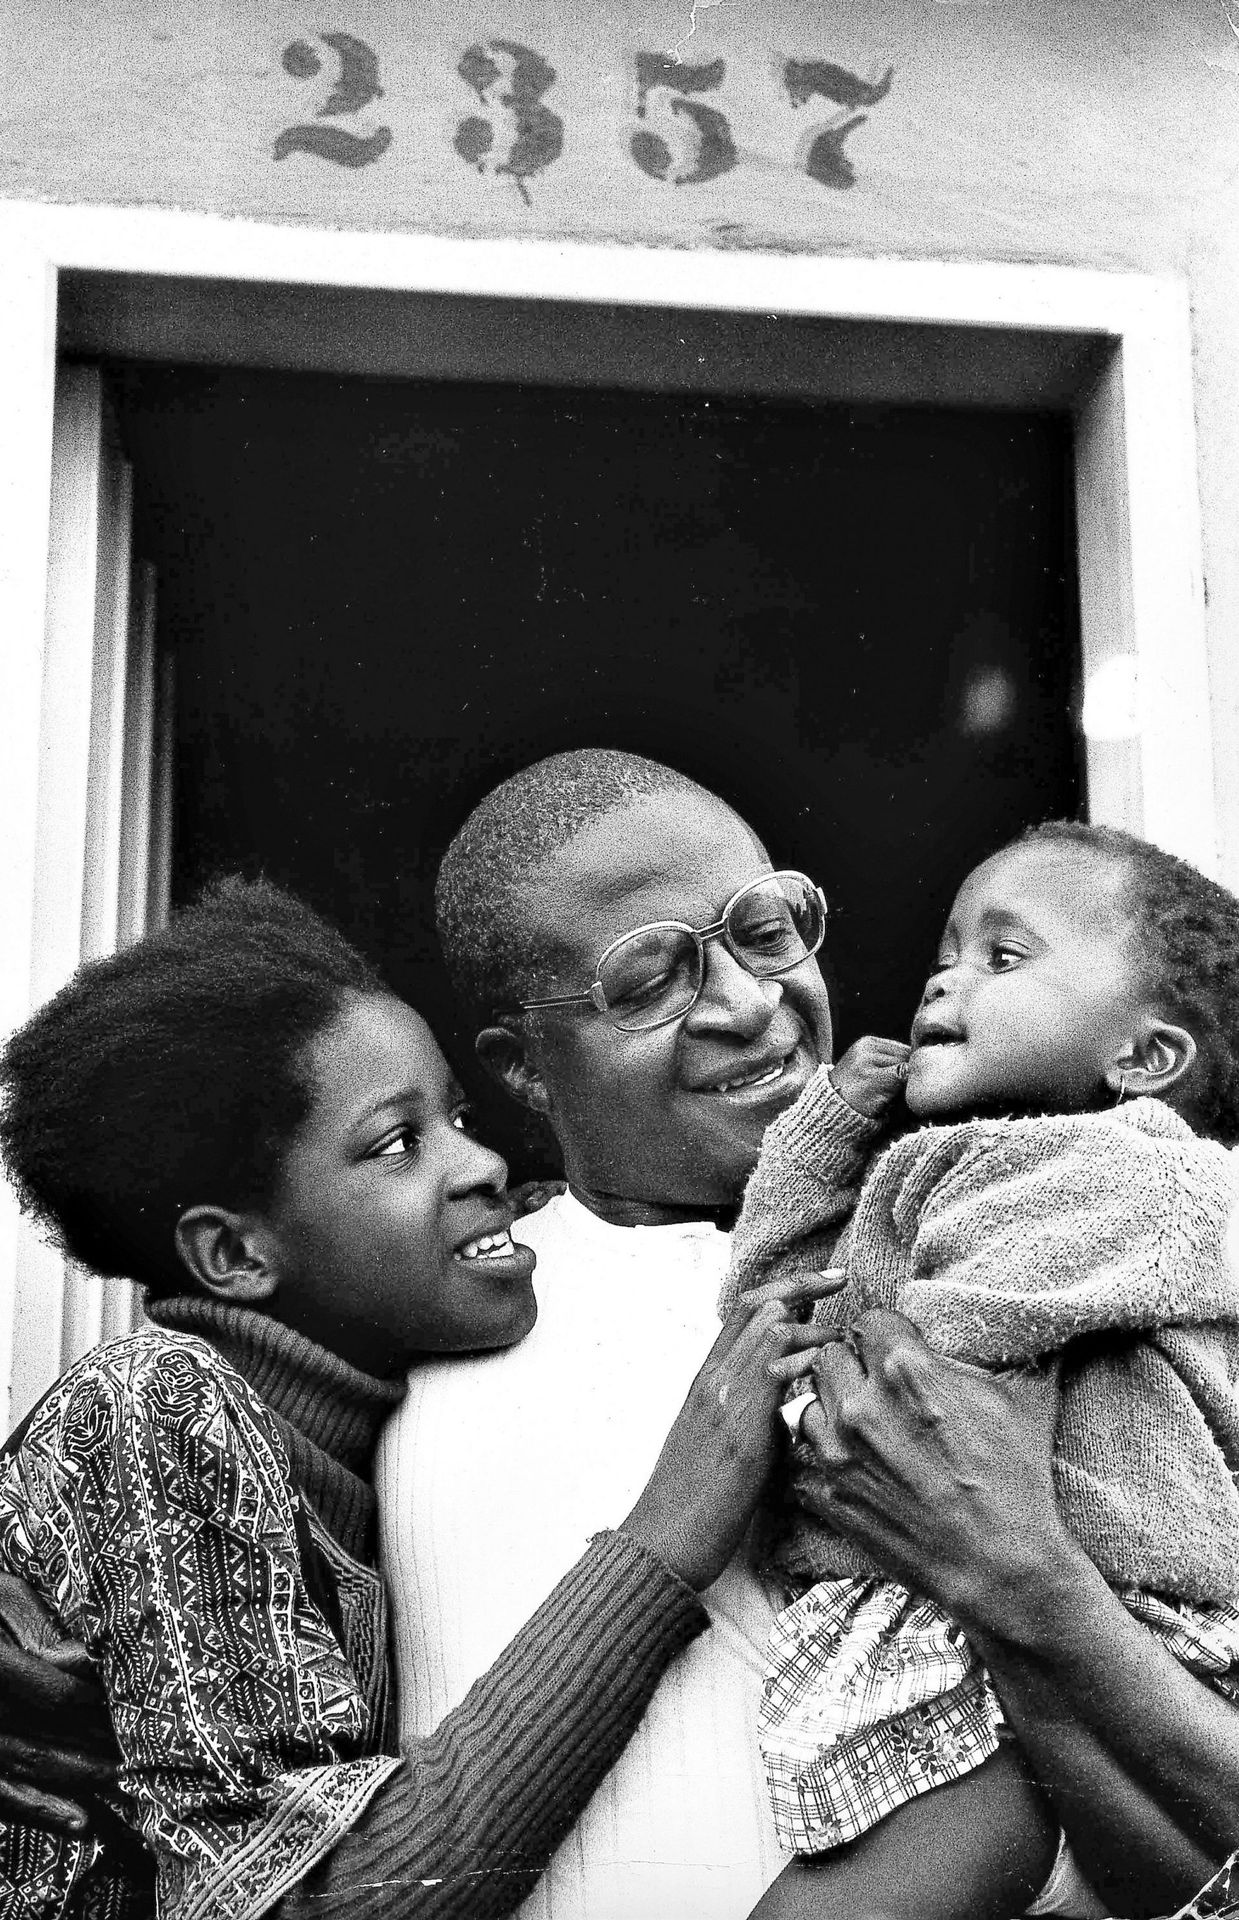 1er septembre 1975 : Desmond Tutu, alors doyen anglican de Johannesburg, avec sa femme Leah et leur enfant.